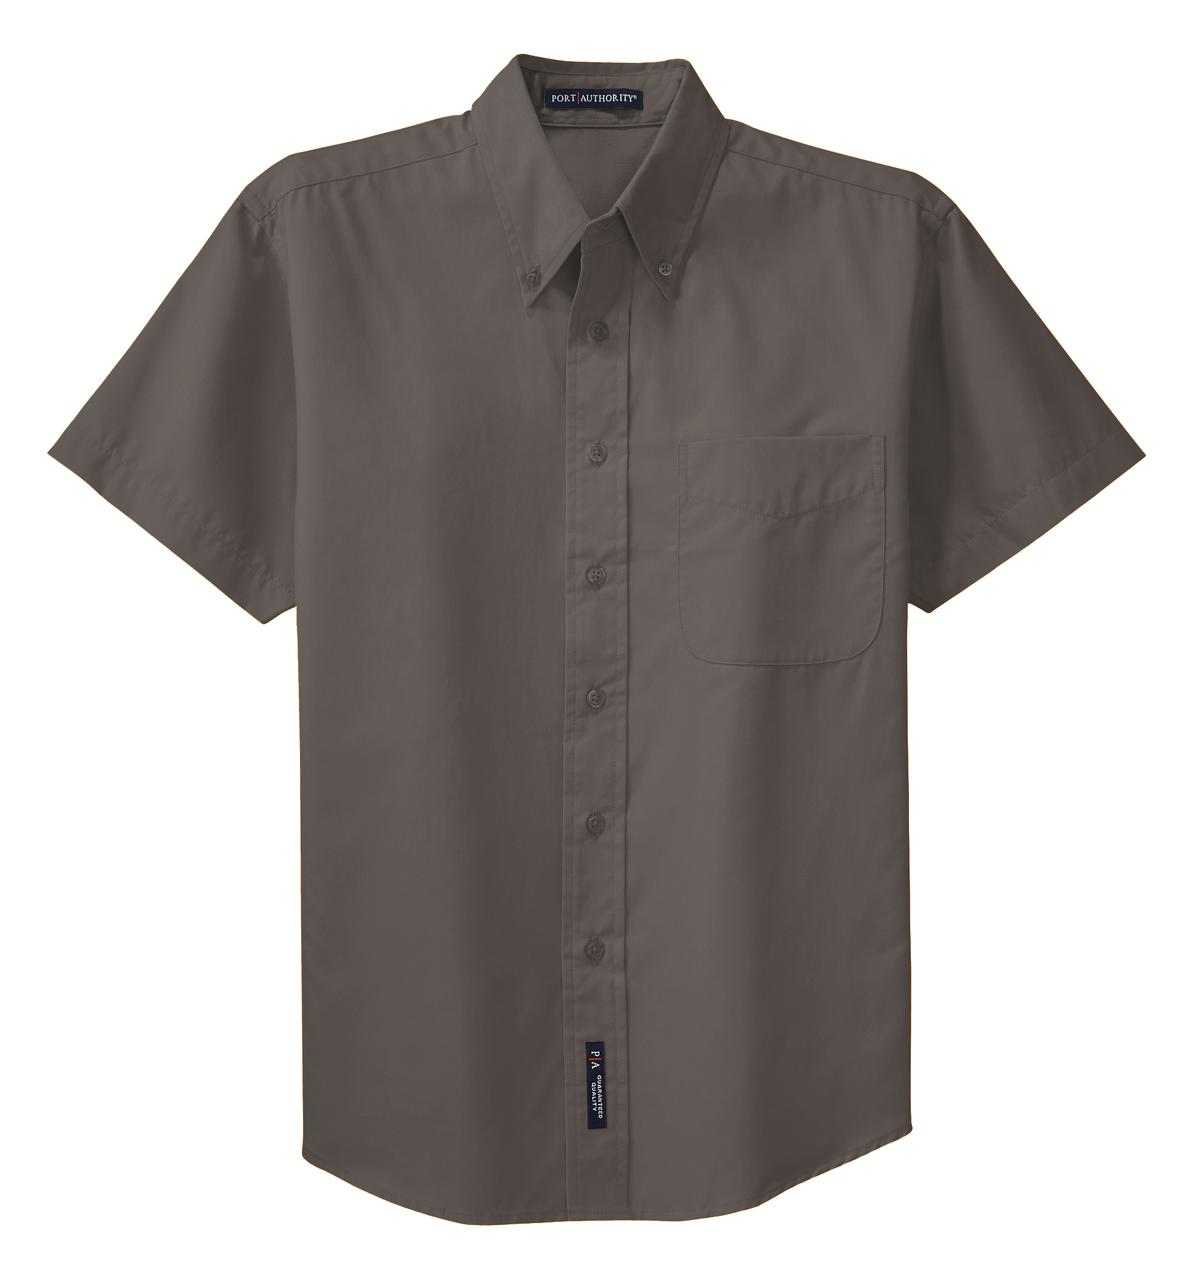 Port Authority S508 Short Sleeve Easy Care Shirt - Bark - HIT a Double - 5